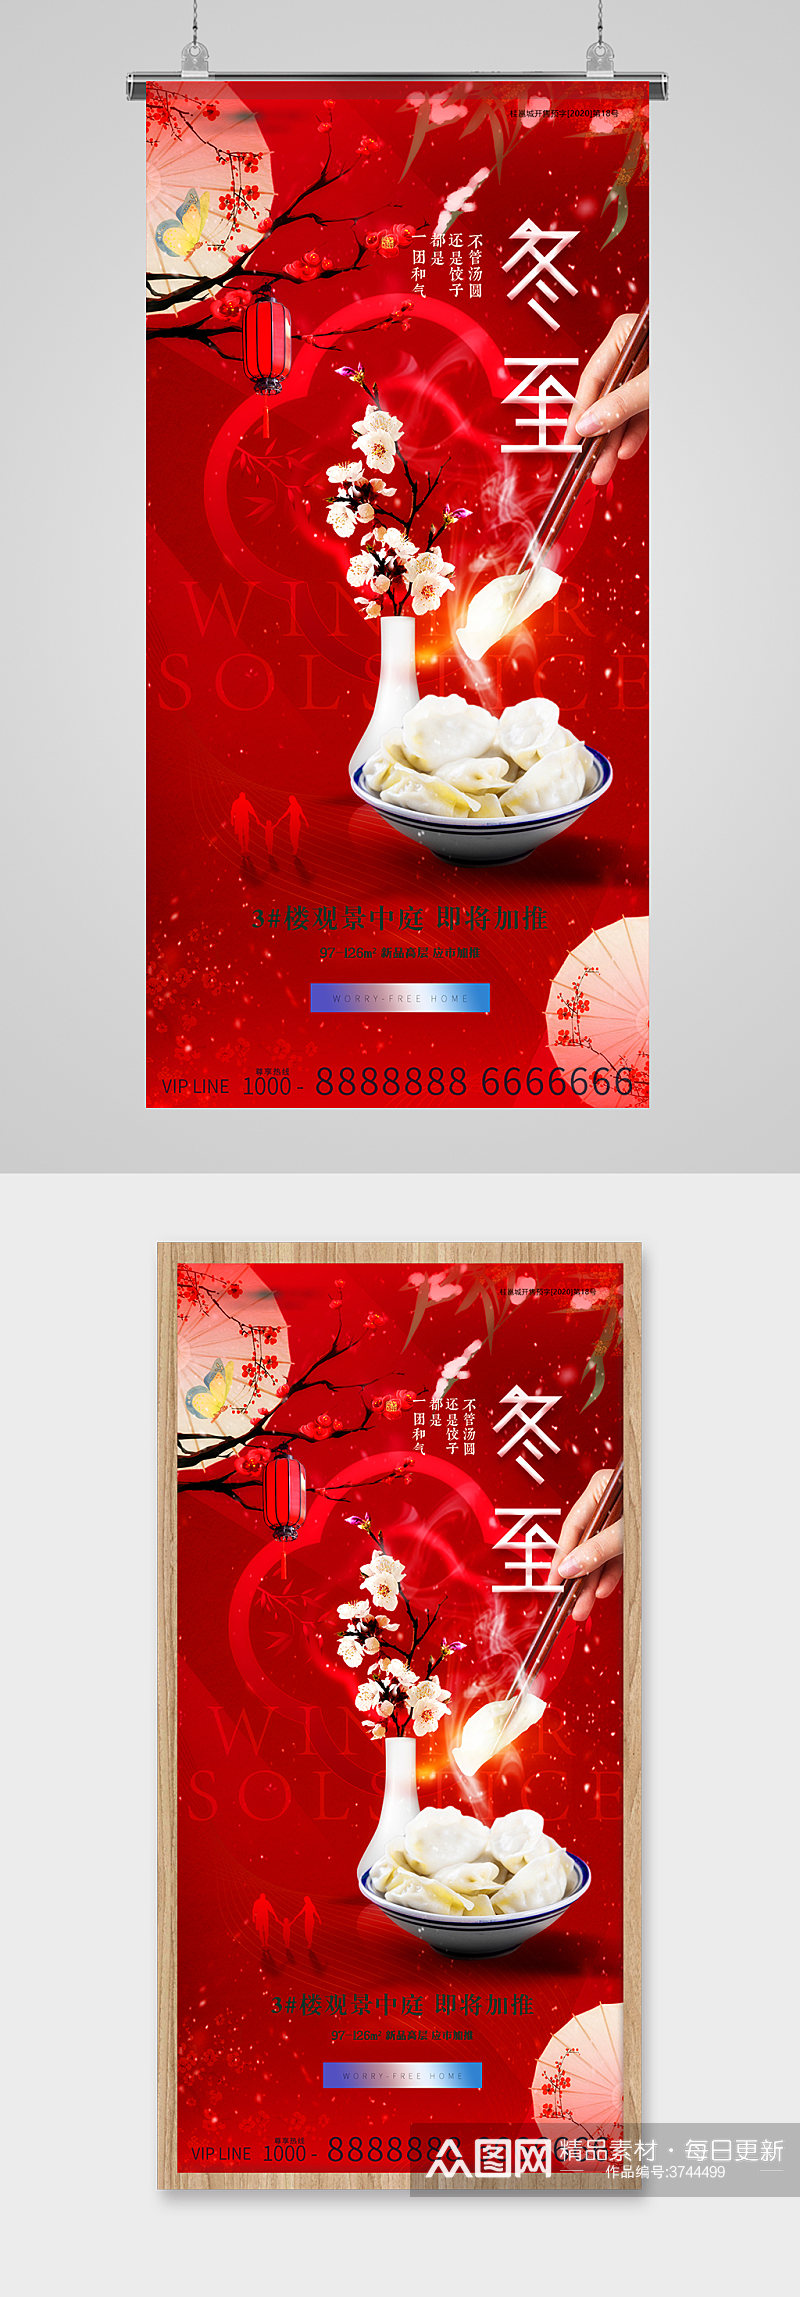 冬至节气吃饺子金红地产海报素材